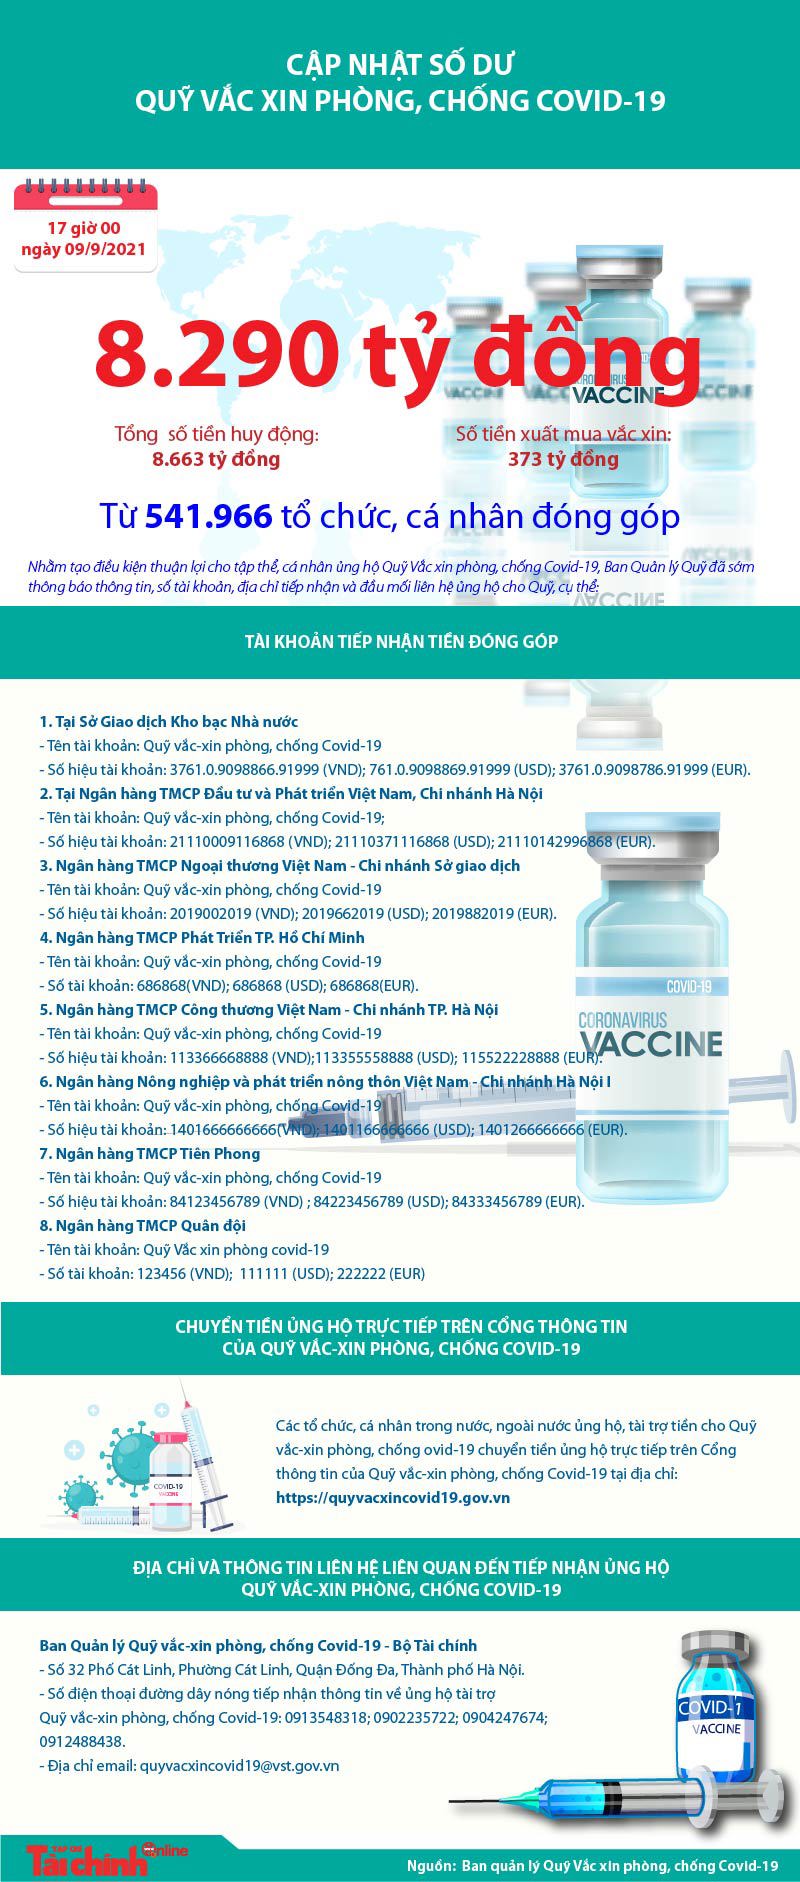 [Infographics] Quỹ Vắc xin phòng, chống COVID-19 còn dư 8.290 tỷ đồng - Ảnh 1